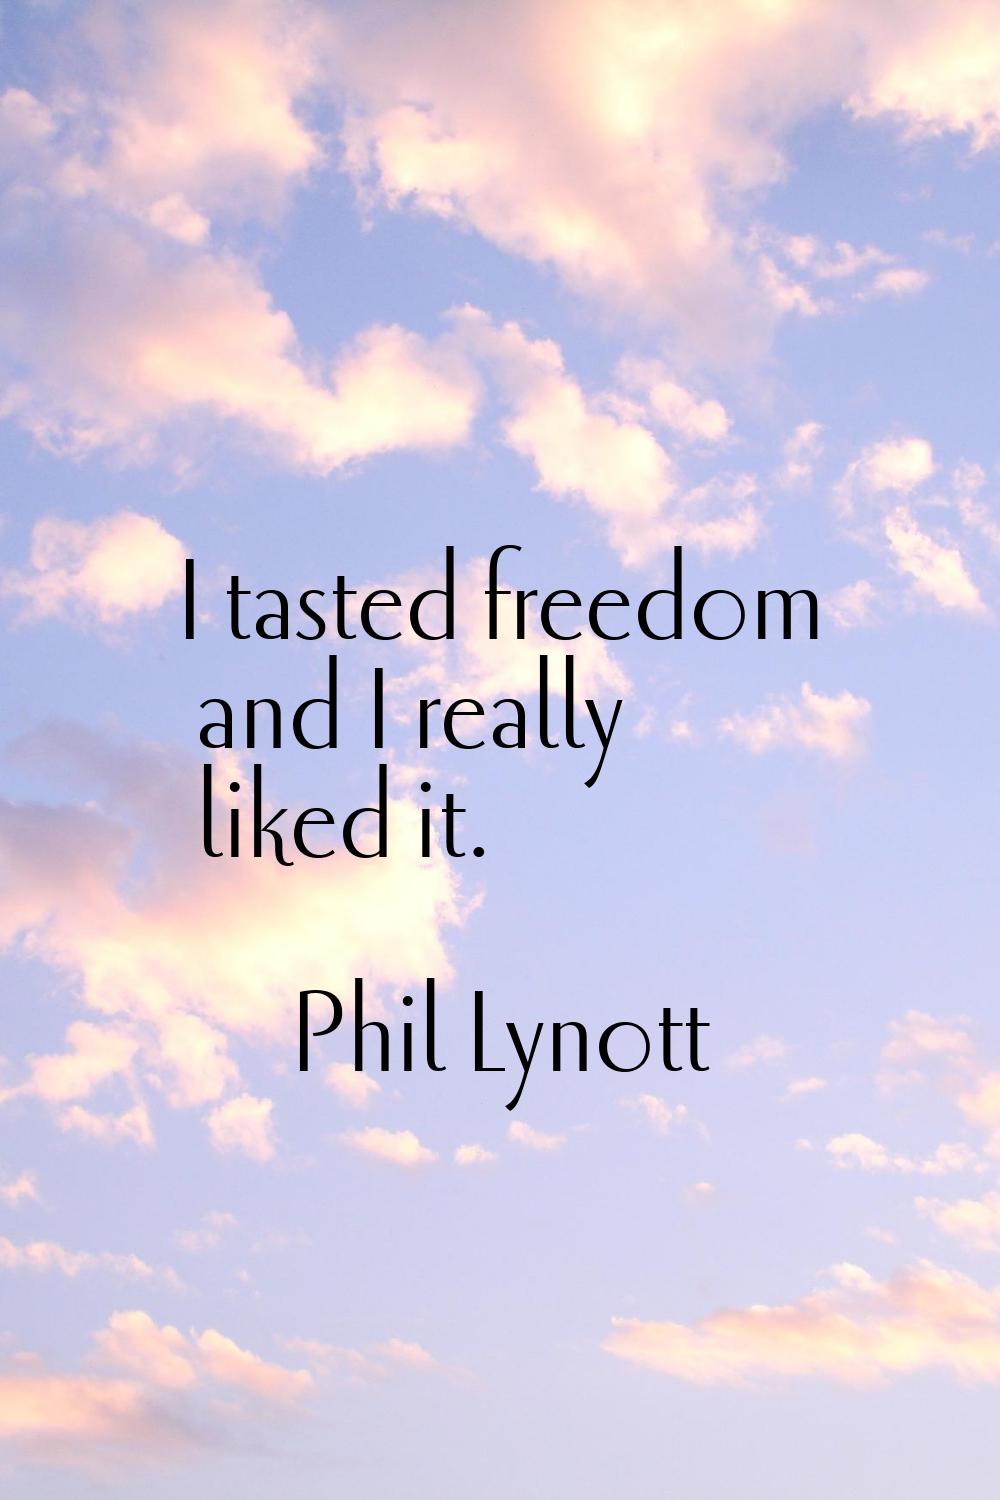 I tasted freedom and I really liked it.